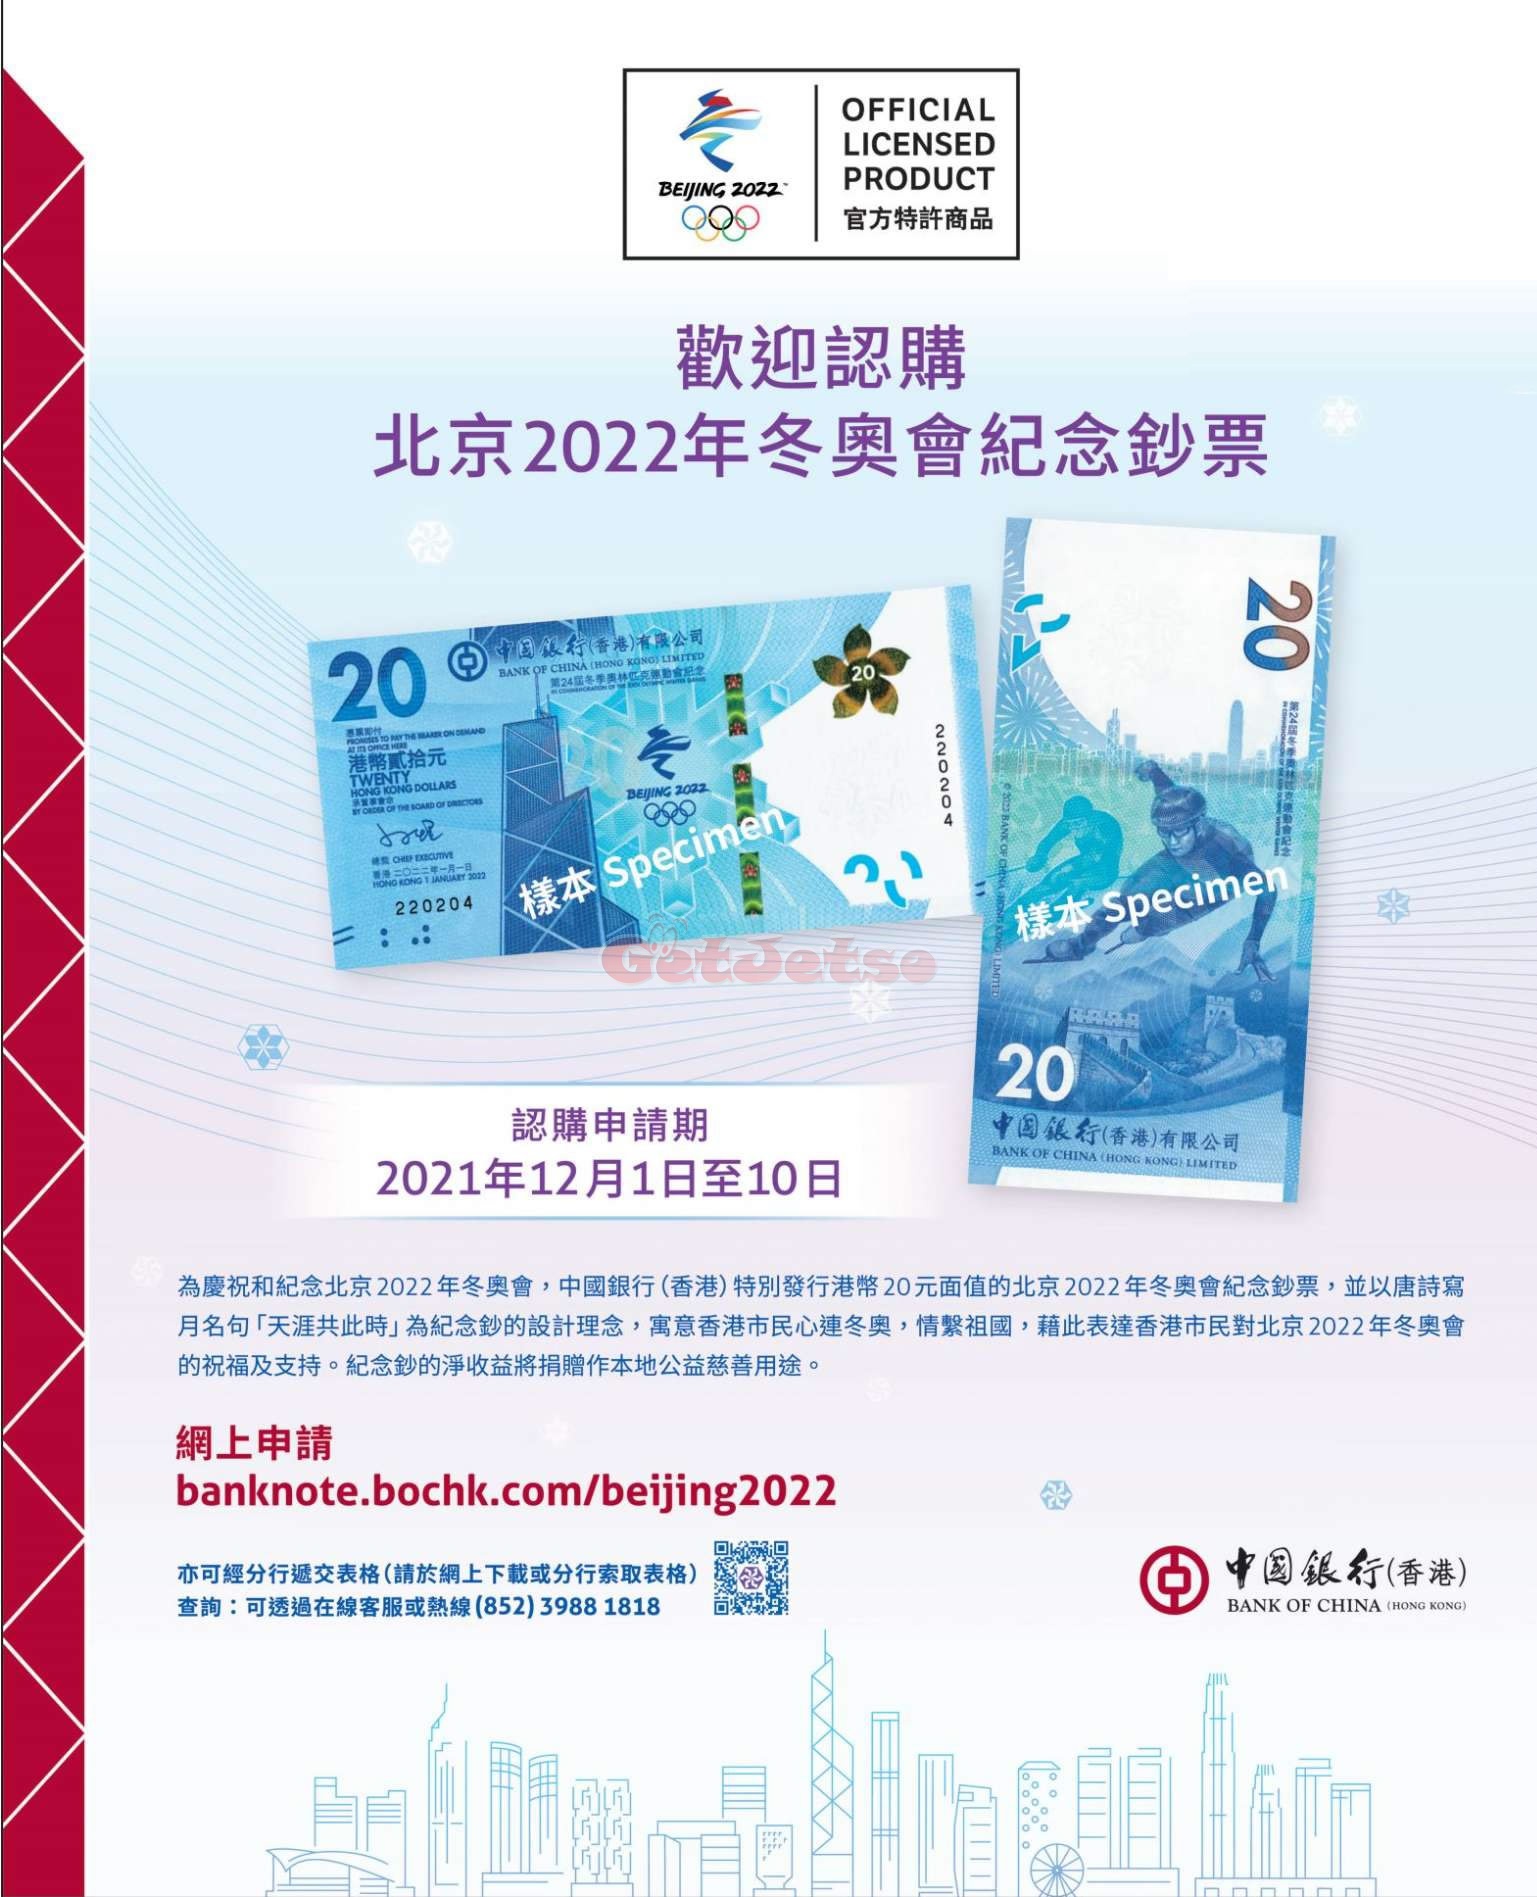 中銀香港「北京2022年冬奧會紀念鈔票」正式接受認購圖片1